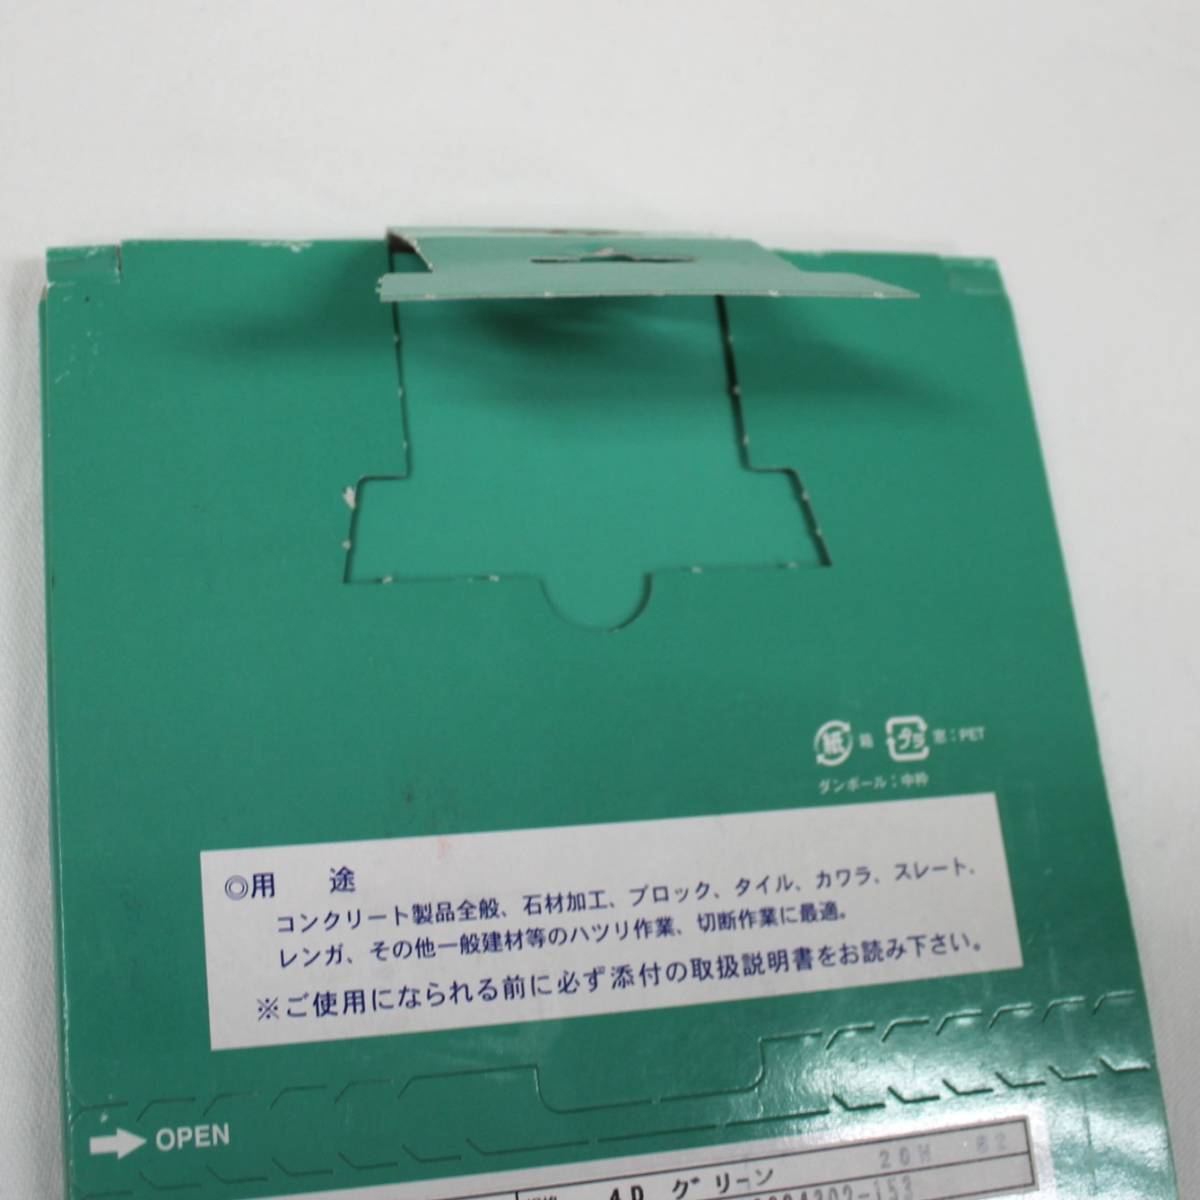 [ Sagawa отправка ] asahi бриллиант промышленность акционерное общество dry резчик 4 портативный резчик зеленый 01